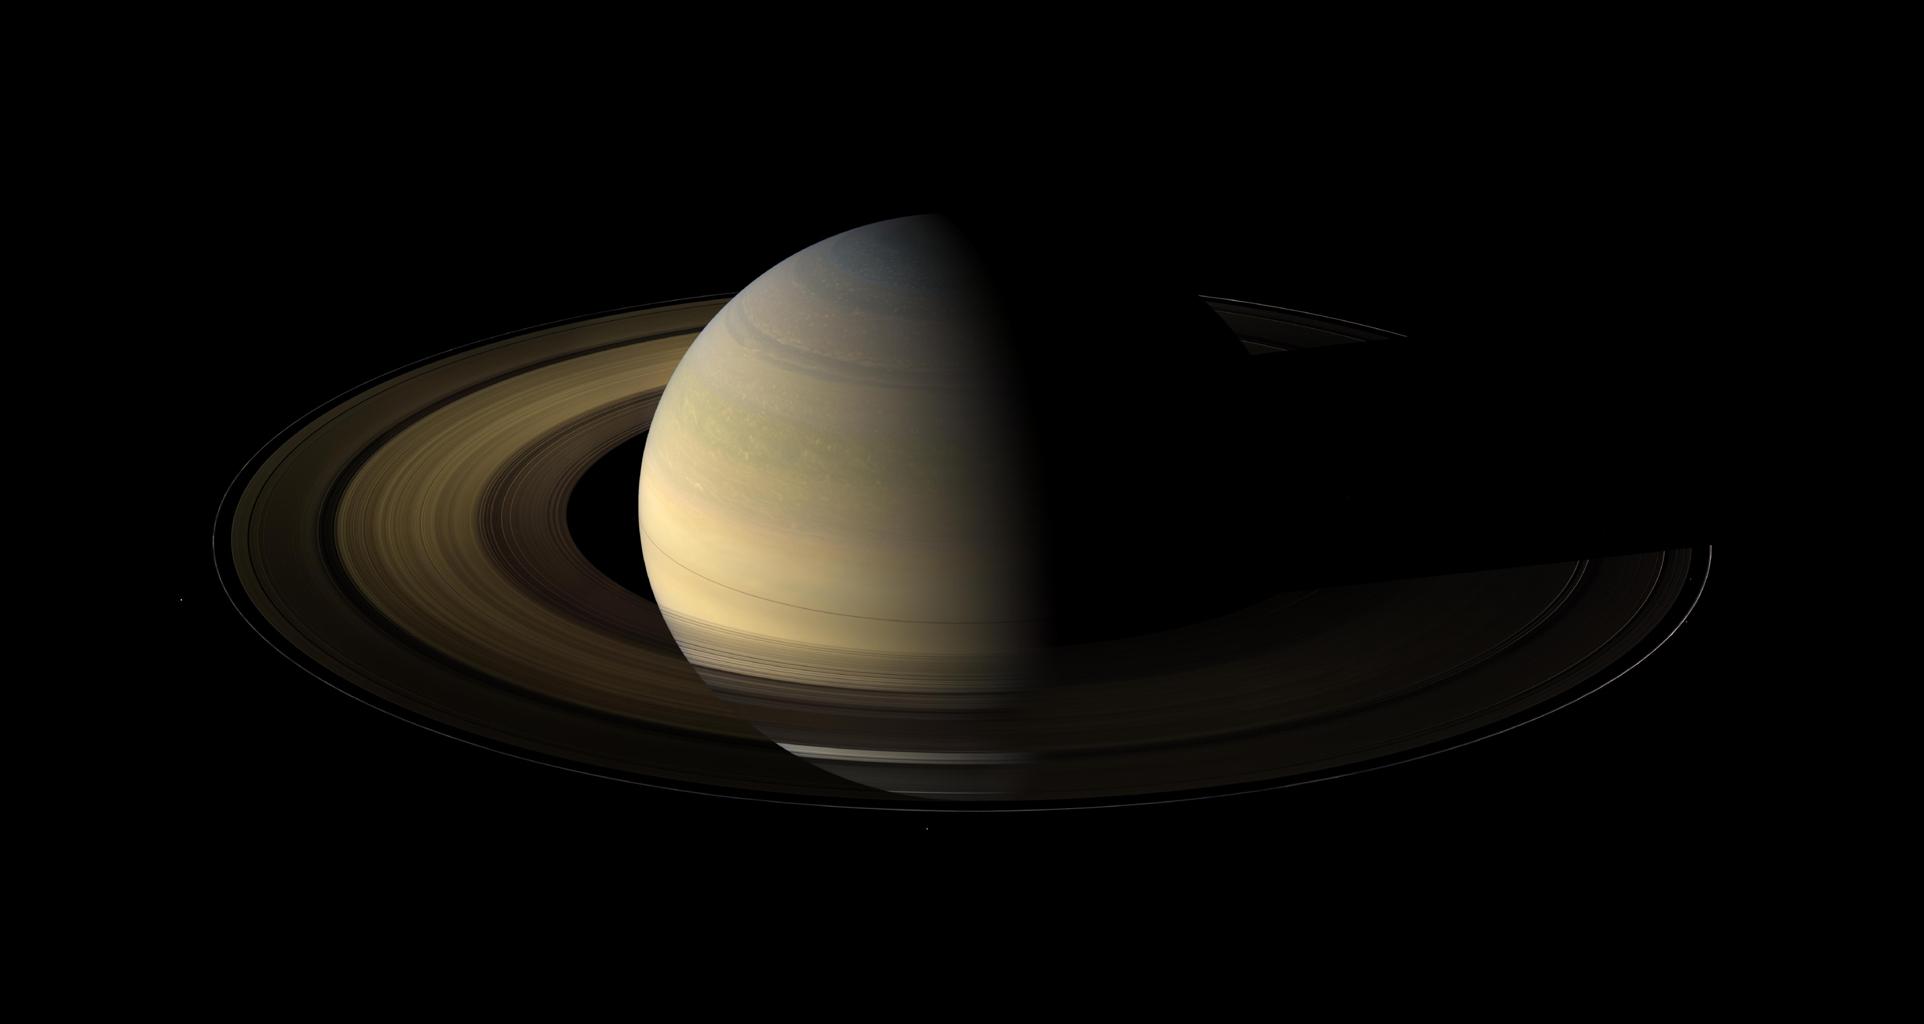 Сатурн — шестая планета от Солнца и вторая по размерам планета в Солнечной системе после Юпитера. Сатурн, а также Юпитер, Уран и Нептун, классифицируются как газовые гиганты. Сатурн назван в честь римского бога земледелия.